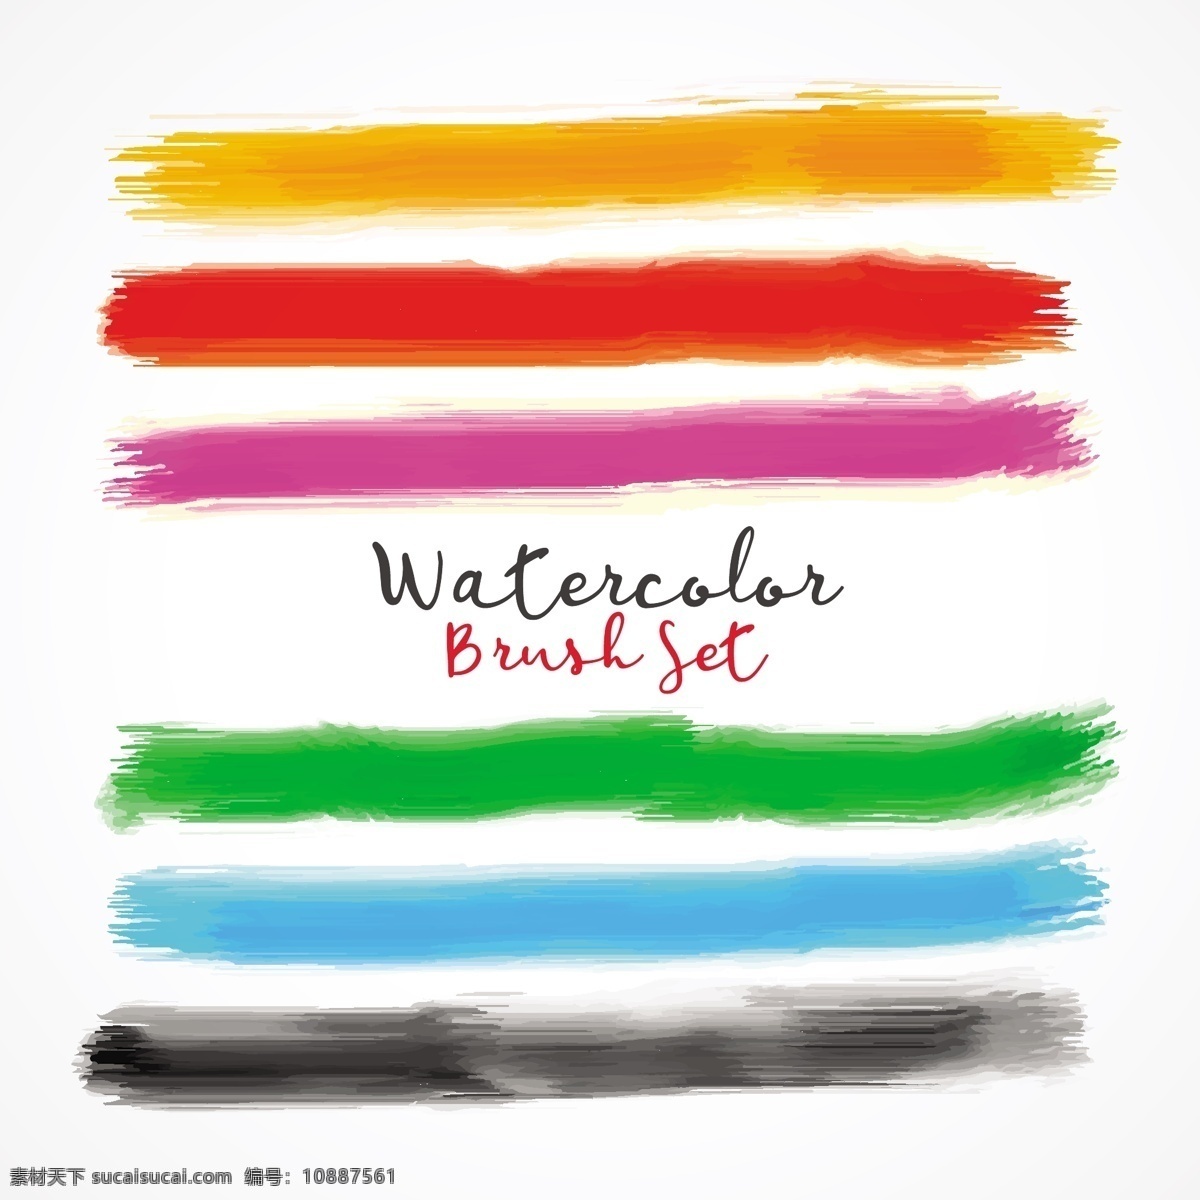 彩色 水彩 画笔 效果 矢量 水彩画笔效果 矢量素材